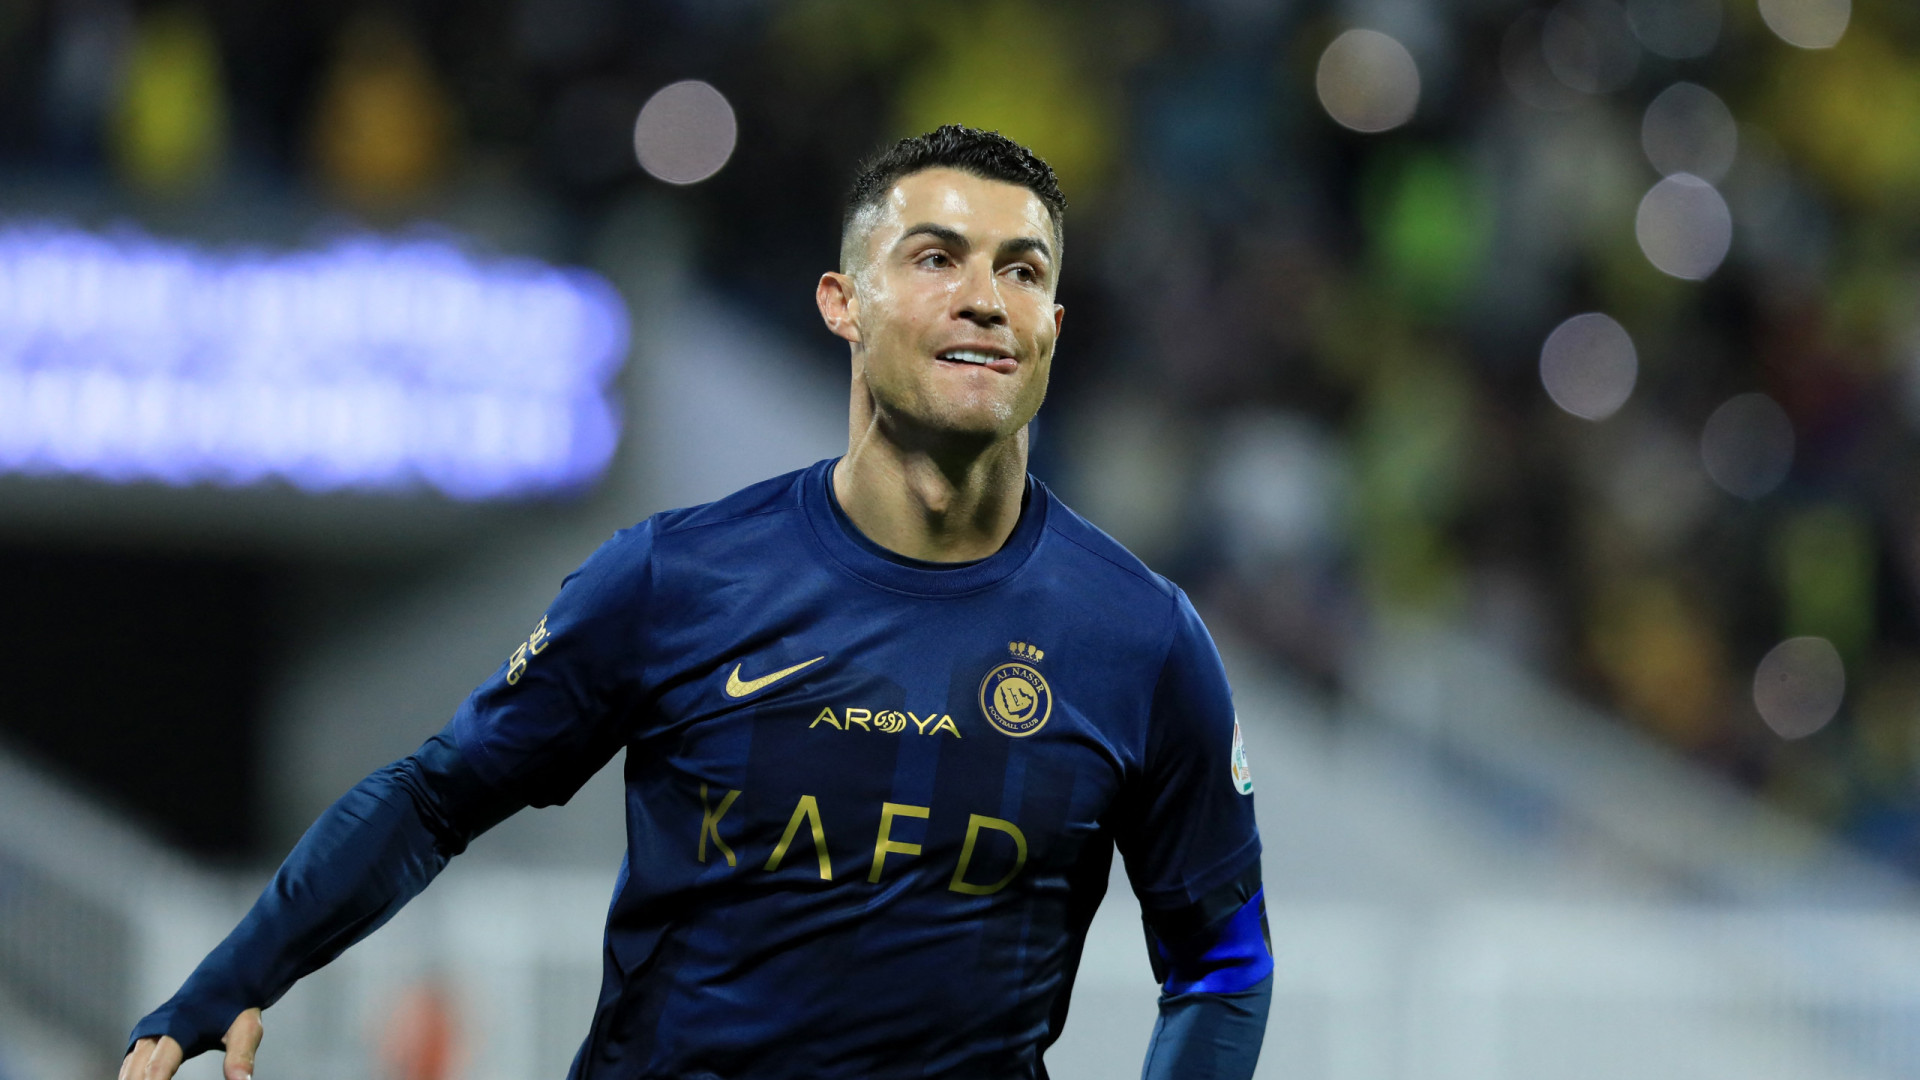 Cristiano Ronaldo festeja hattrick com dedicatória especial; veja